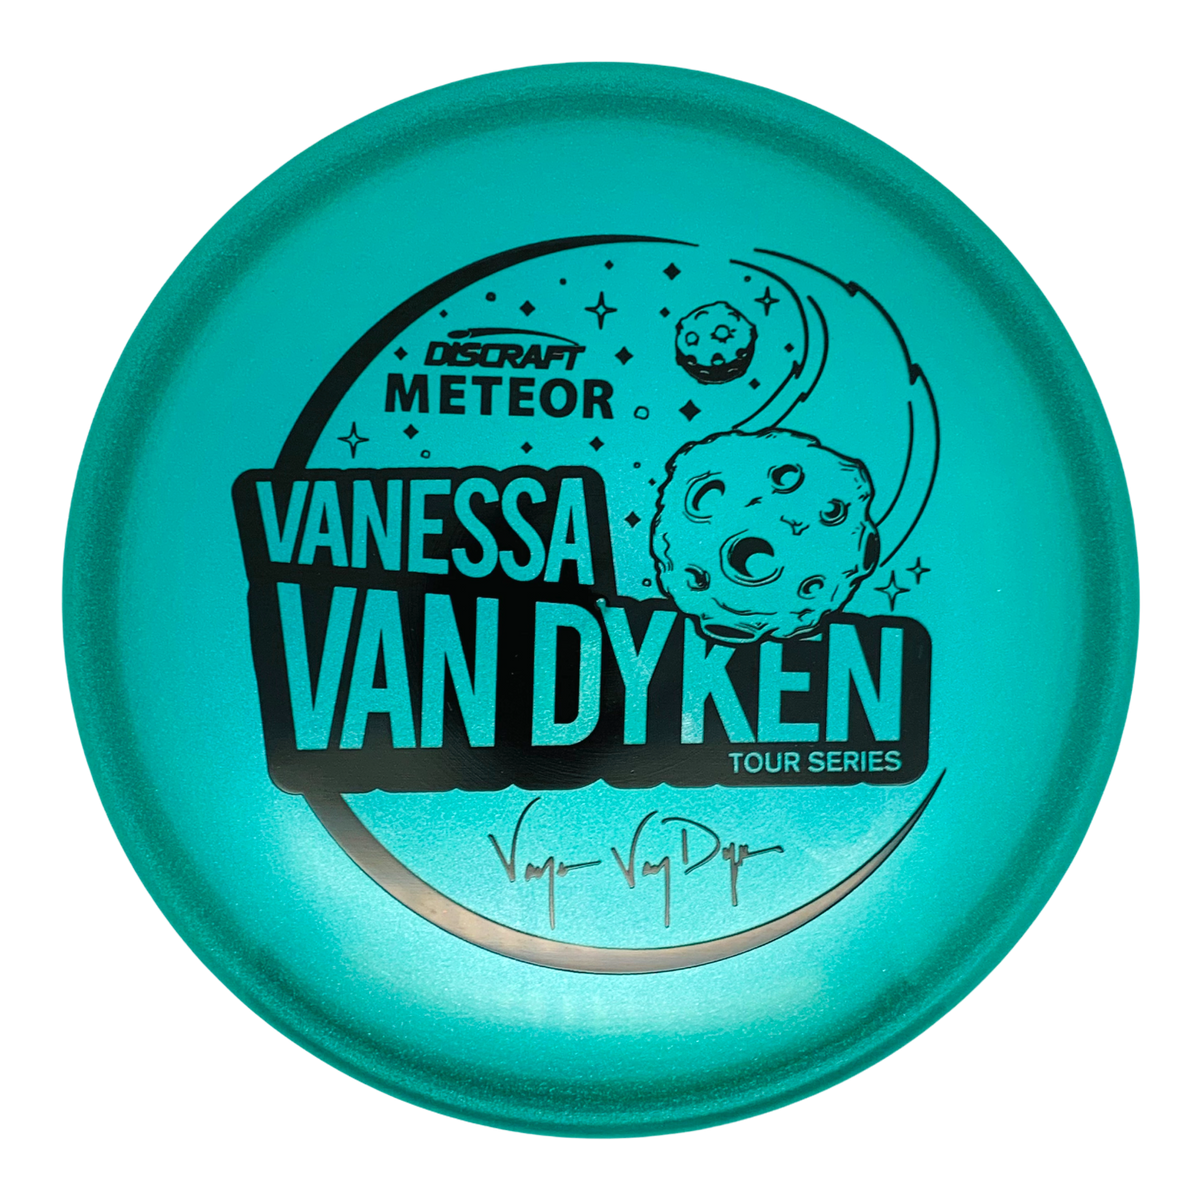 2021 Tour Series Vanessa Van Dyken Metallic Z Meteor